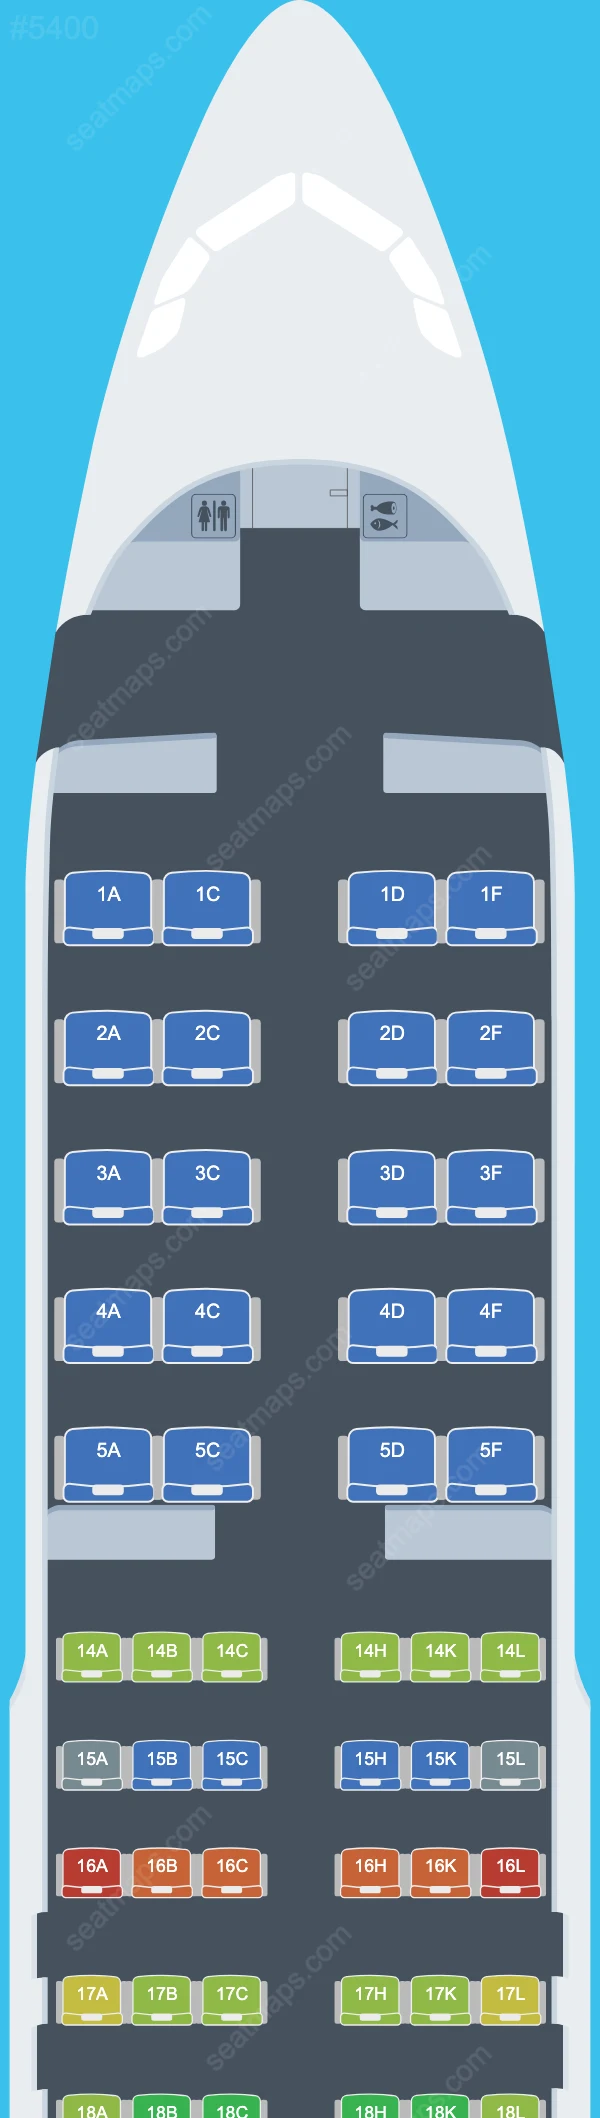 AZAL Azerbaijan Airlines Airbus A320 Seat Maps A320-200 V.1